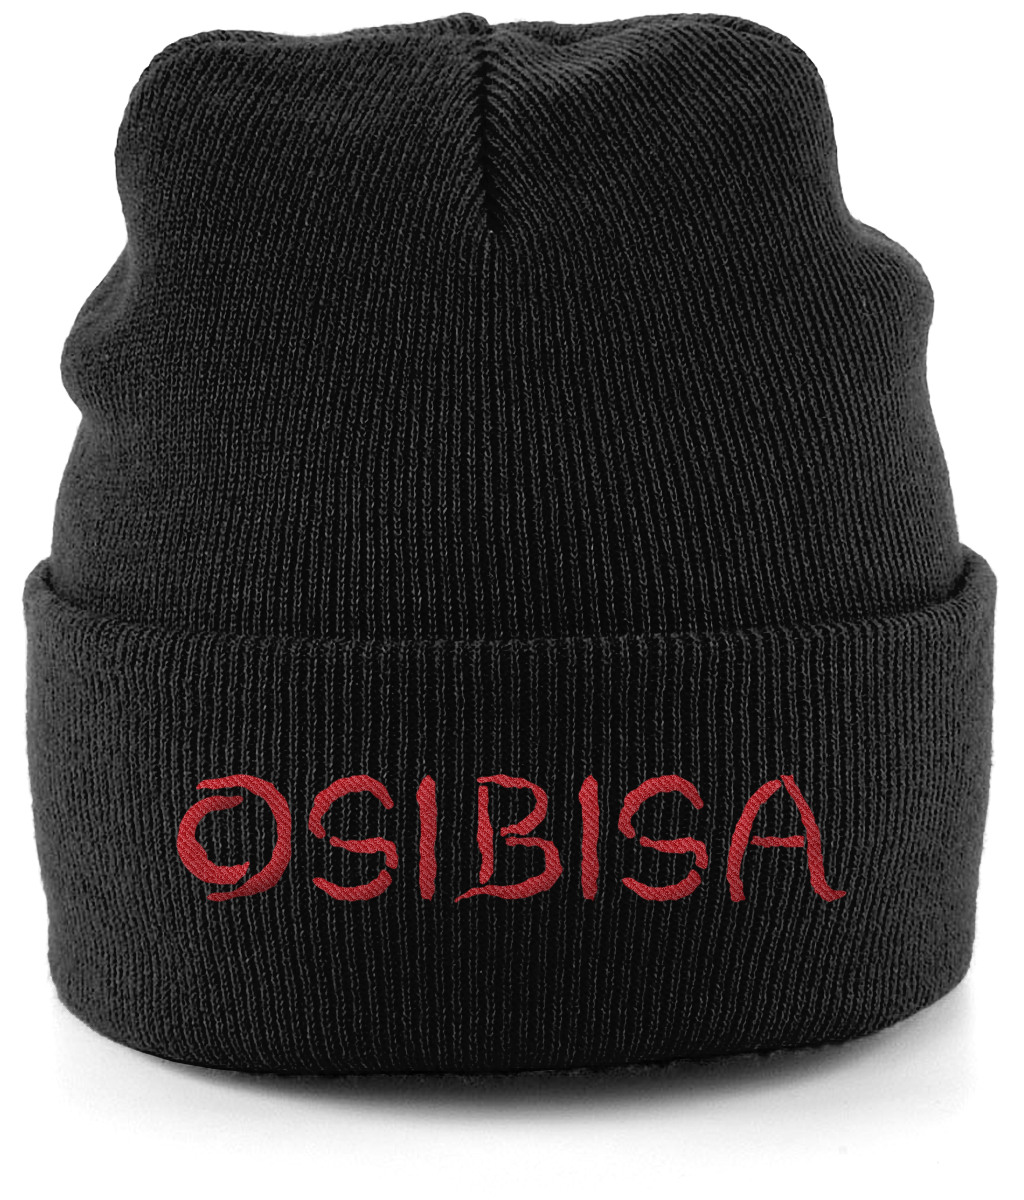 Osibisa Beanie